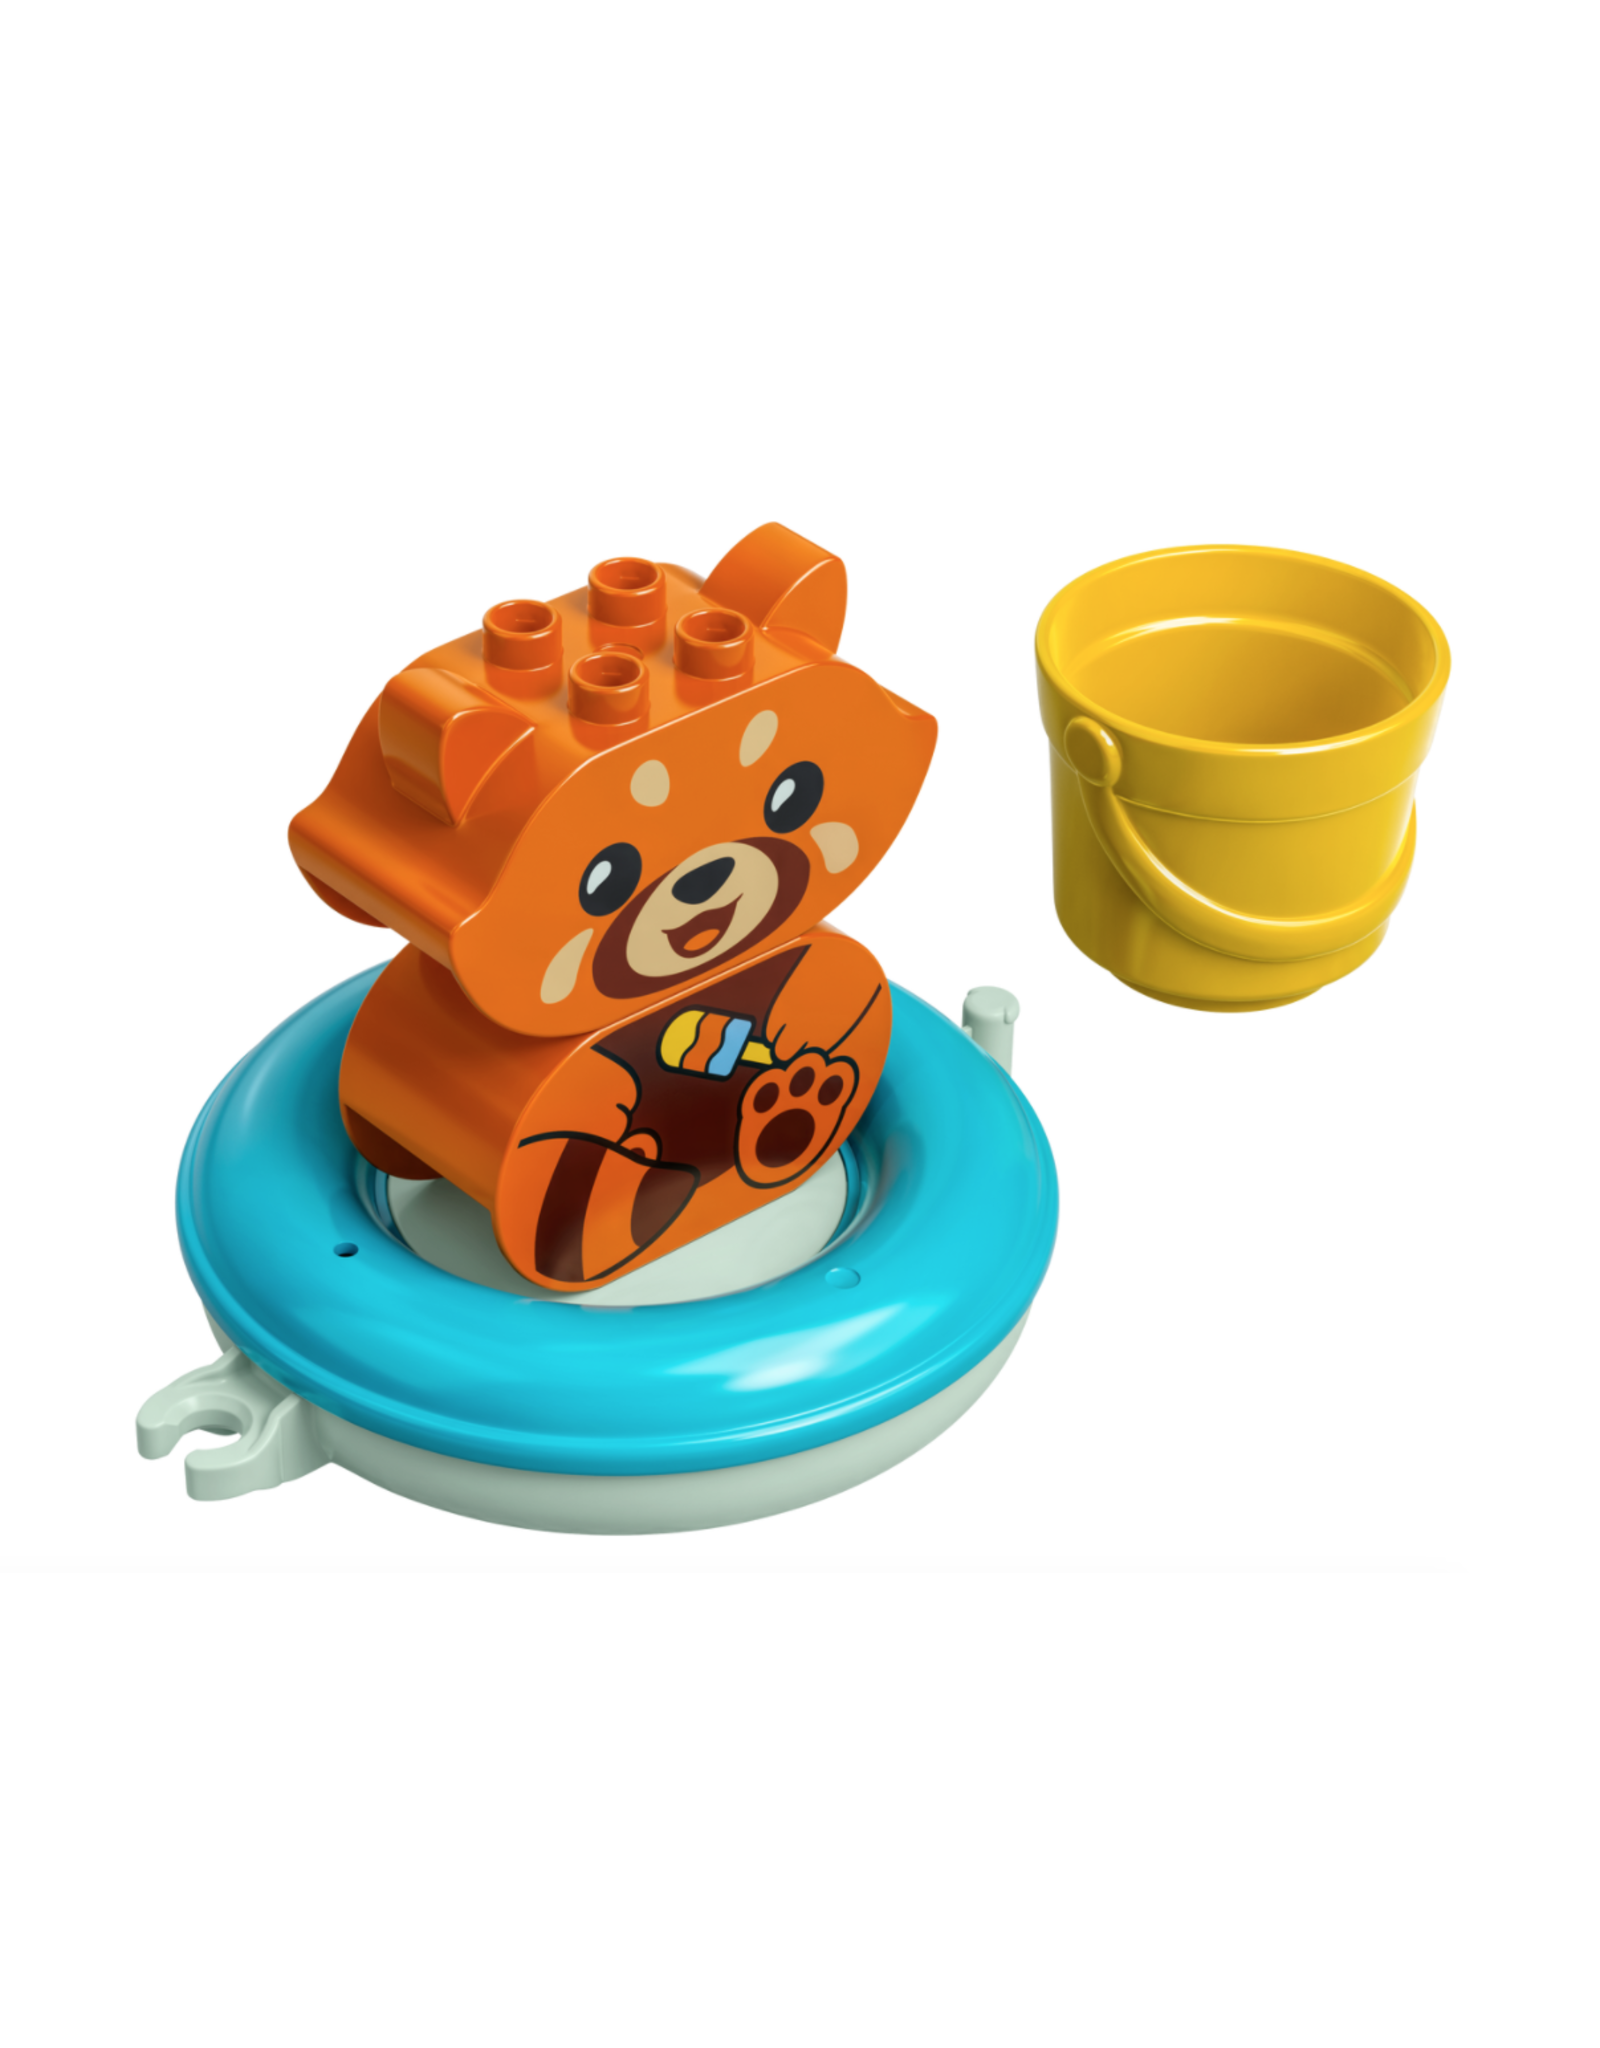 LEGO LEGO Duplo Bath Time Fun: Floating Red Panda